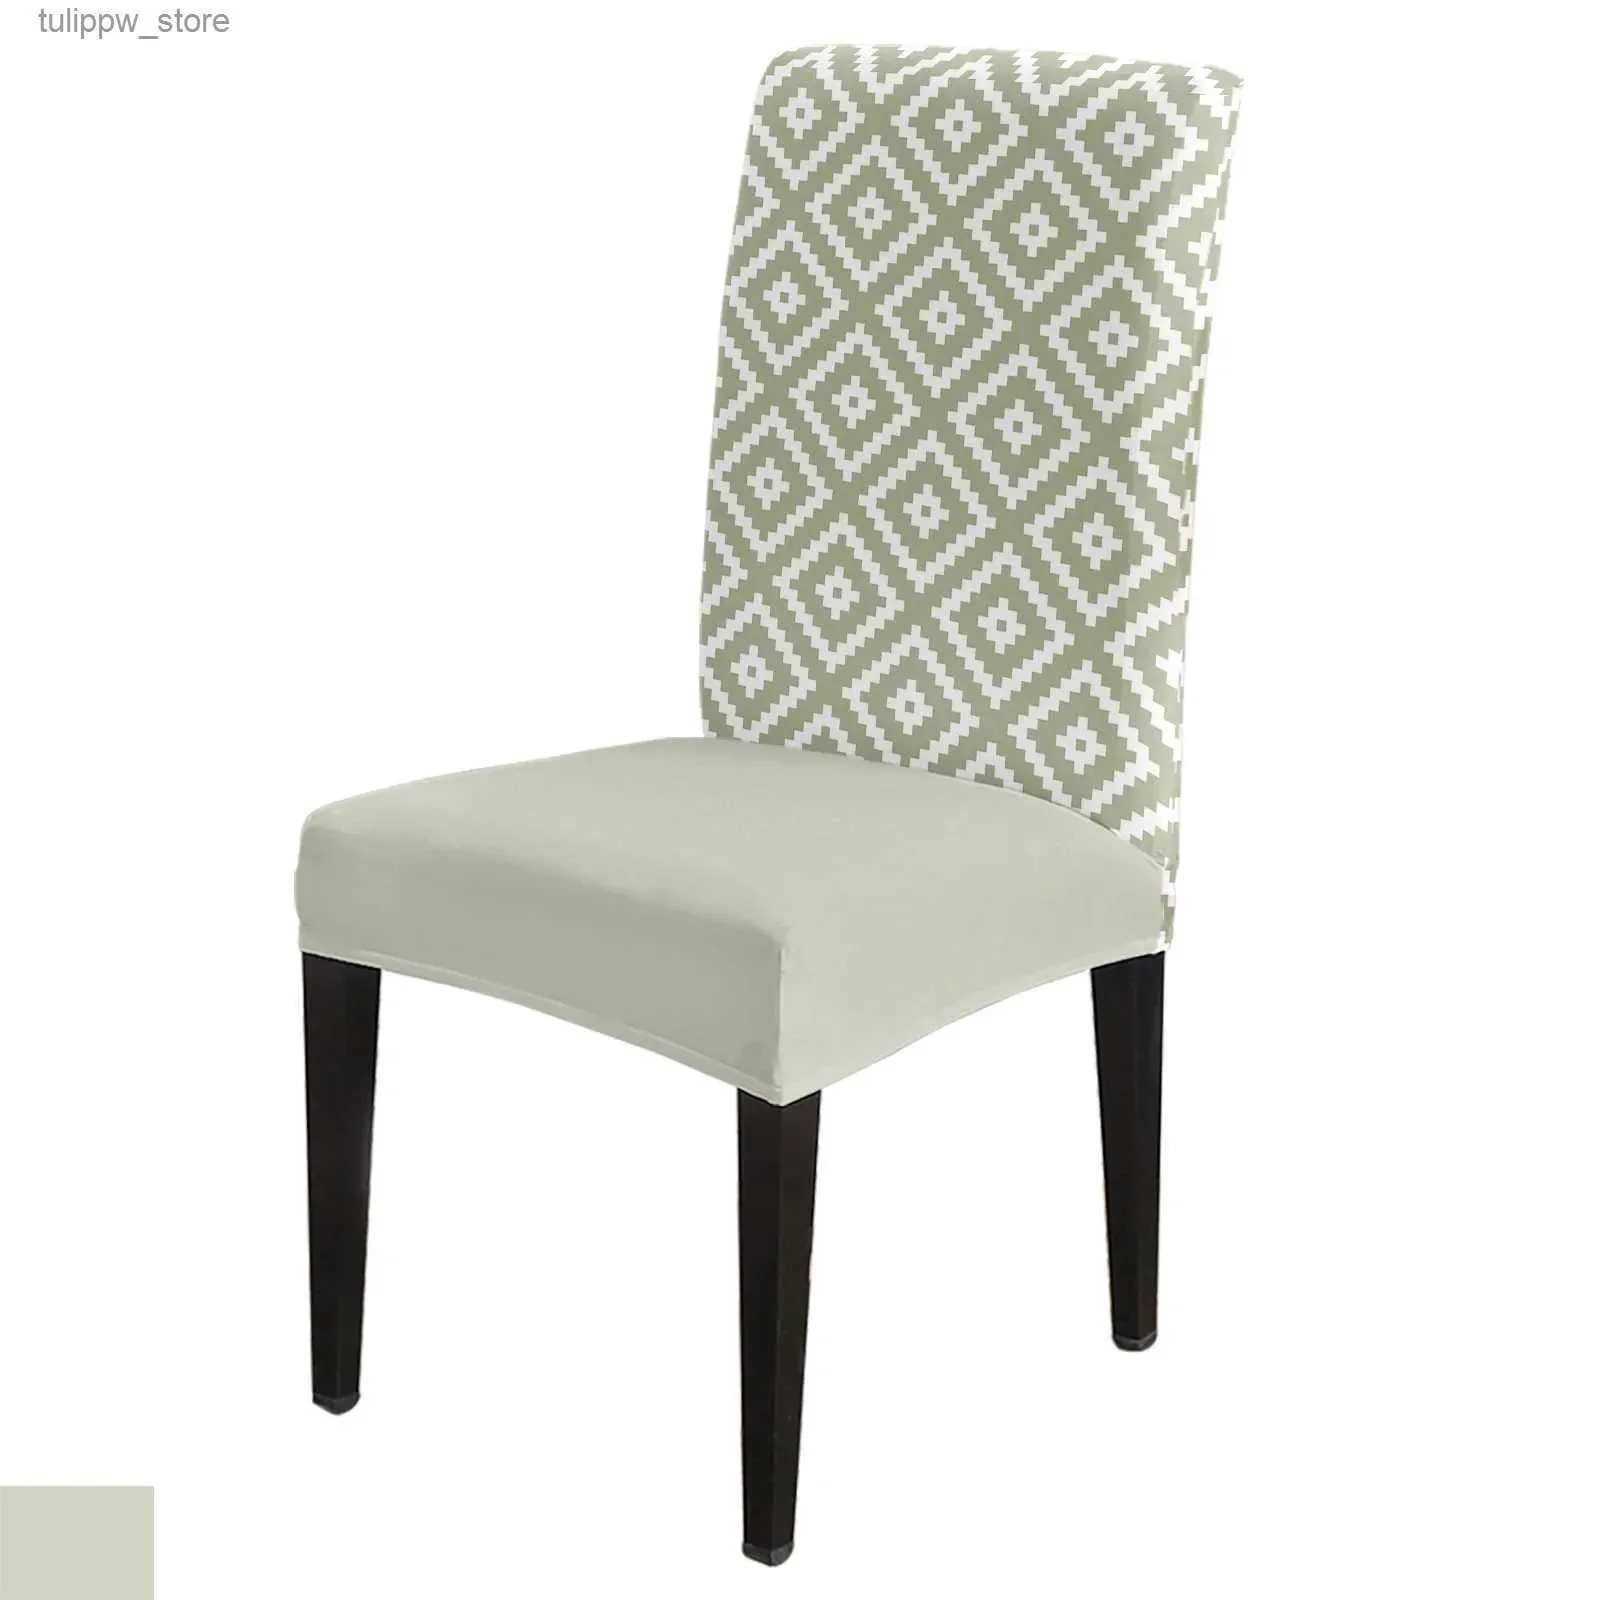 Pokrowce krzesełka geometryczne kwadratowo -teksturowe zielone okładka krzesełka do kuchennego fotela do jadalni okładki rozciągające się do bankietu hotel hotel L240315